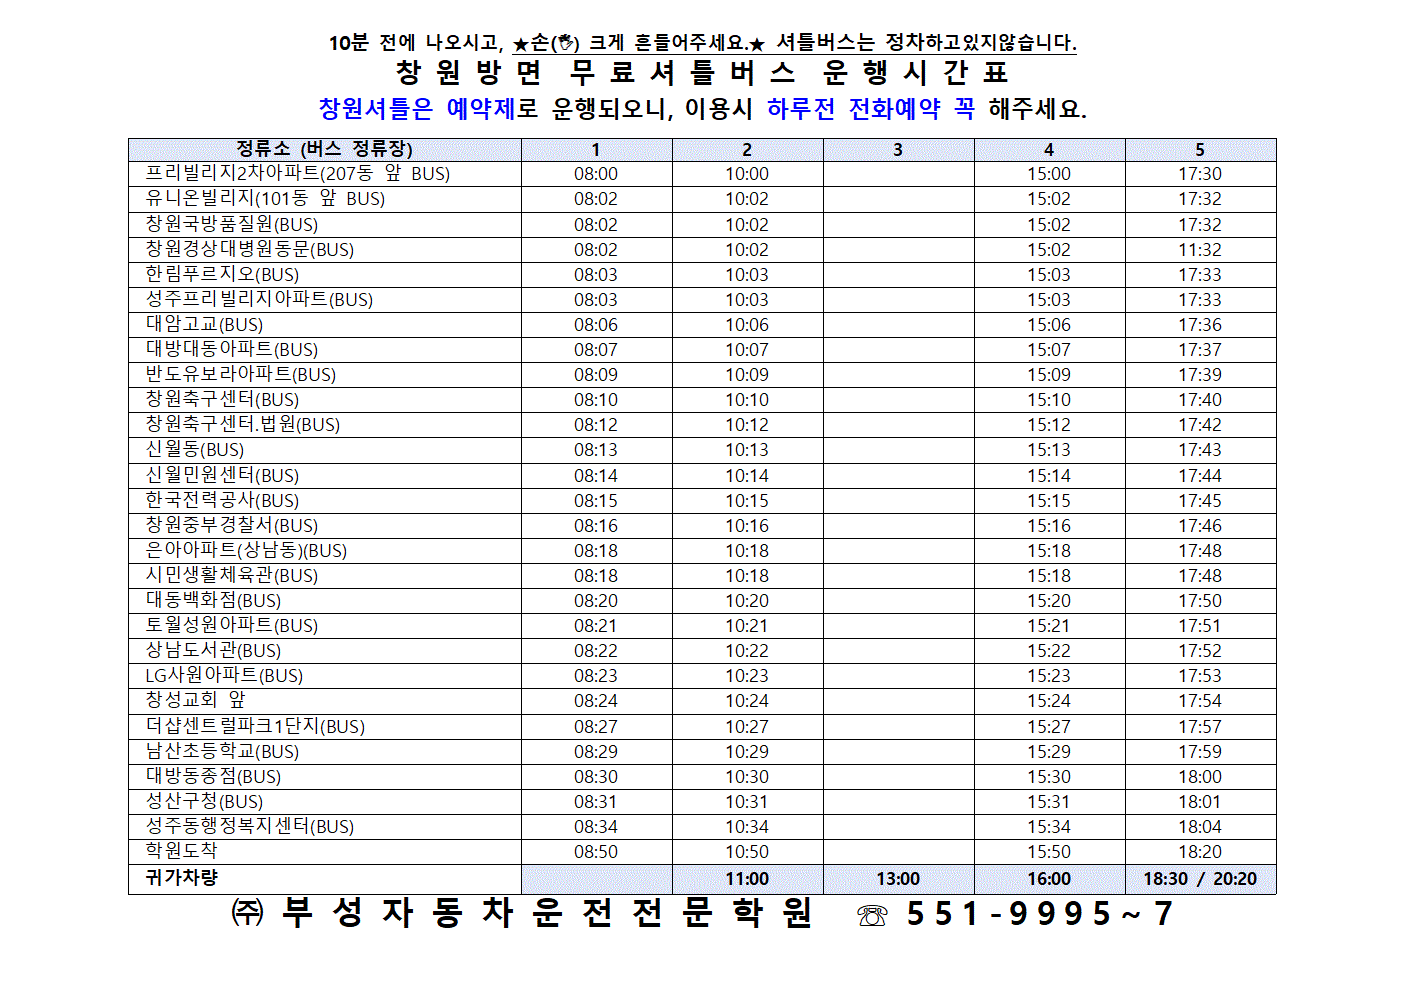 창원 운행시간표 23년도 최신001.gif